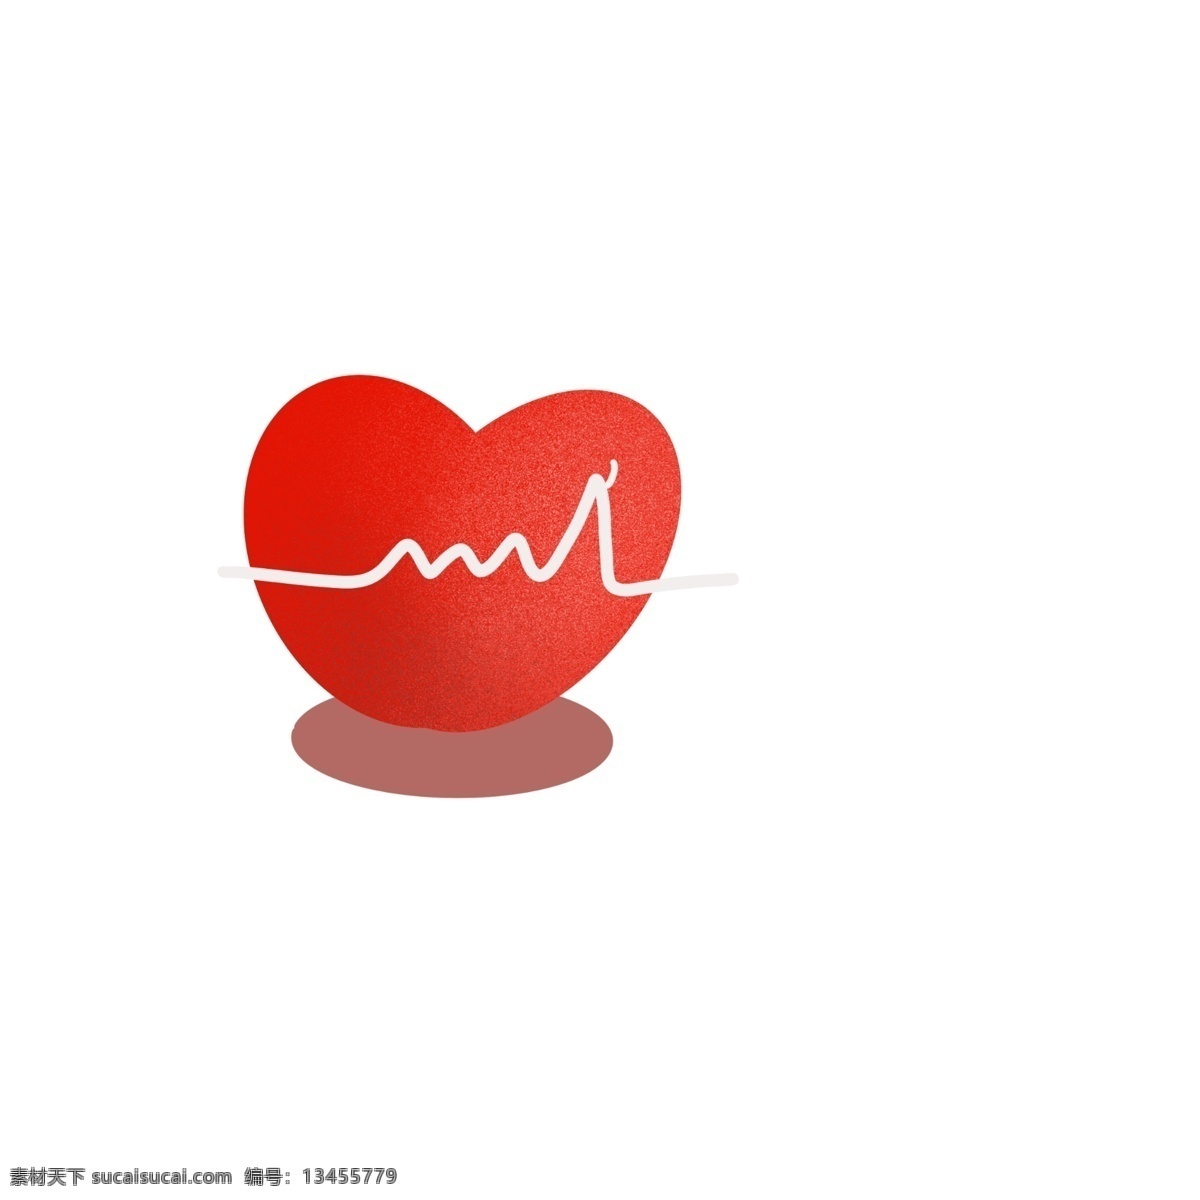 国际 红十字日 红色 心脏 国际红十字日 波动 跳动的心脏 红色爱心 心动感觉 红色心脏